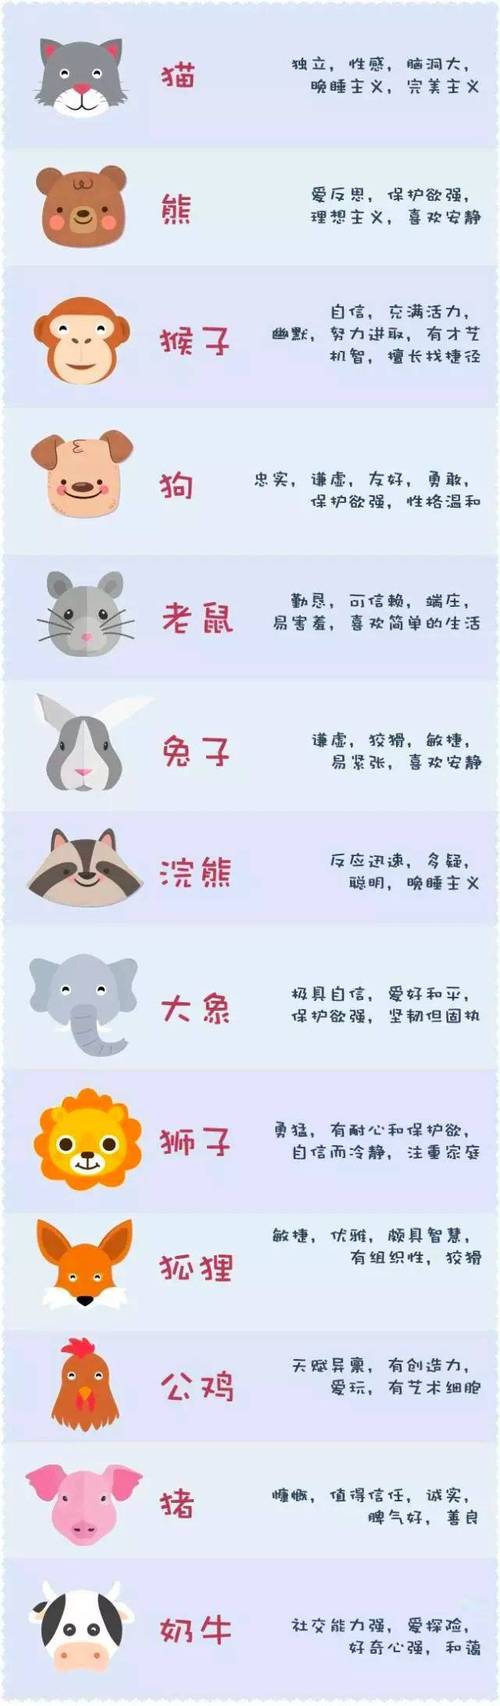 12种动物的性格特征